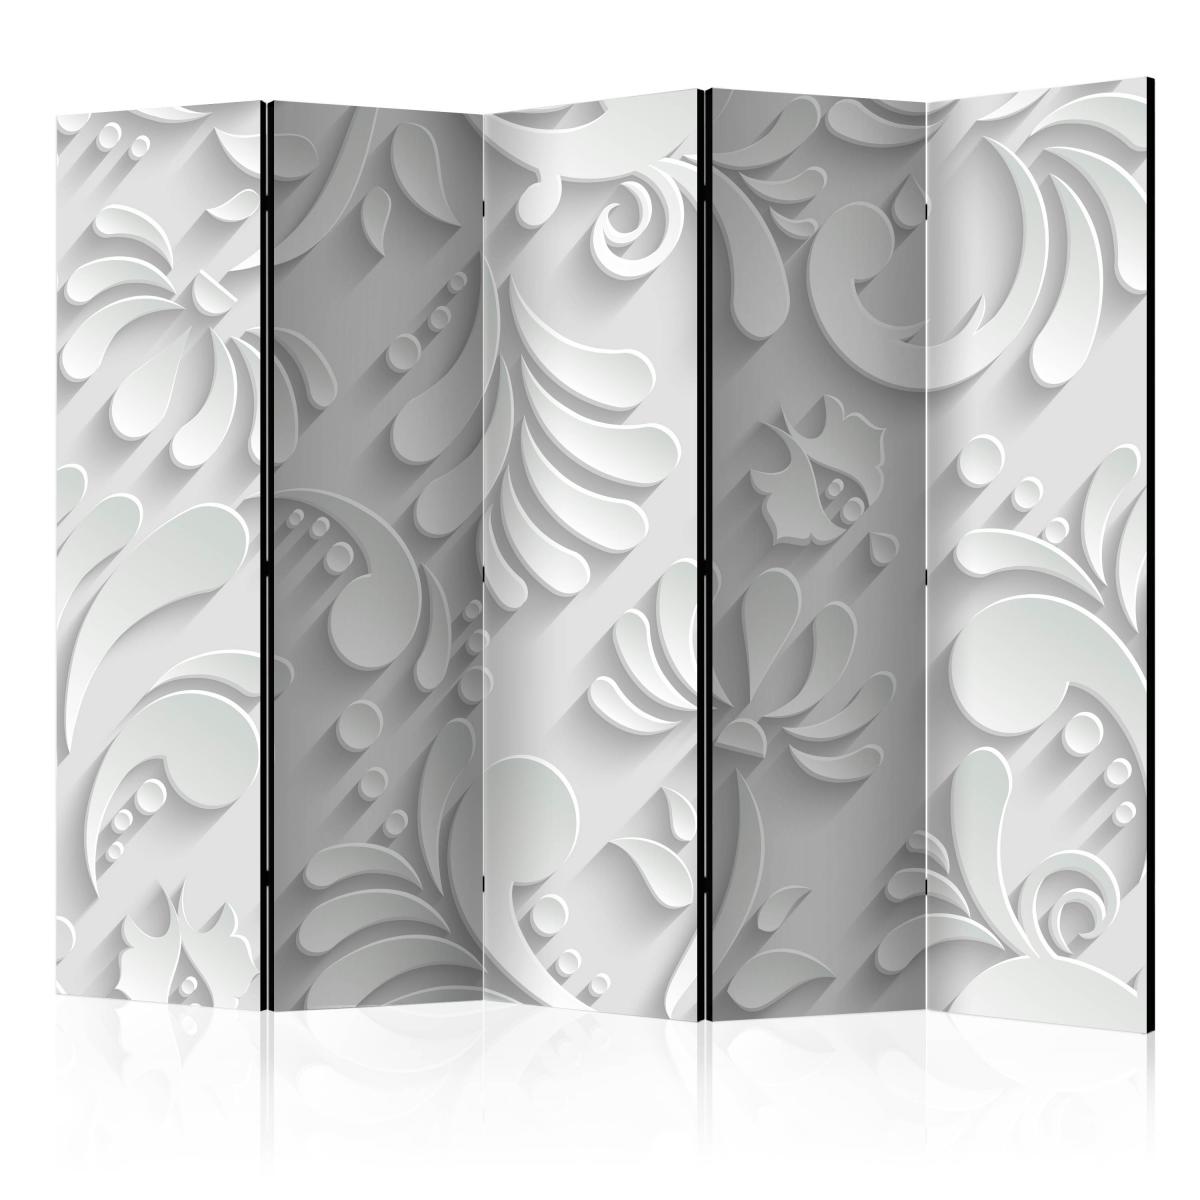 Bimago - Paravent 5 volets - Room divider – Plan motif II - Décoration, image, art | 225x172 cm | XL - Grand Format | - Cloisons